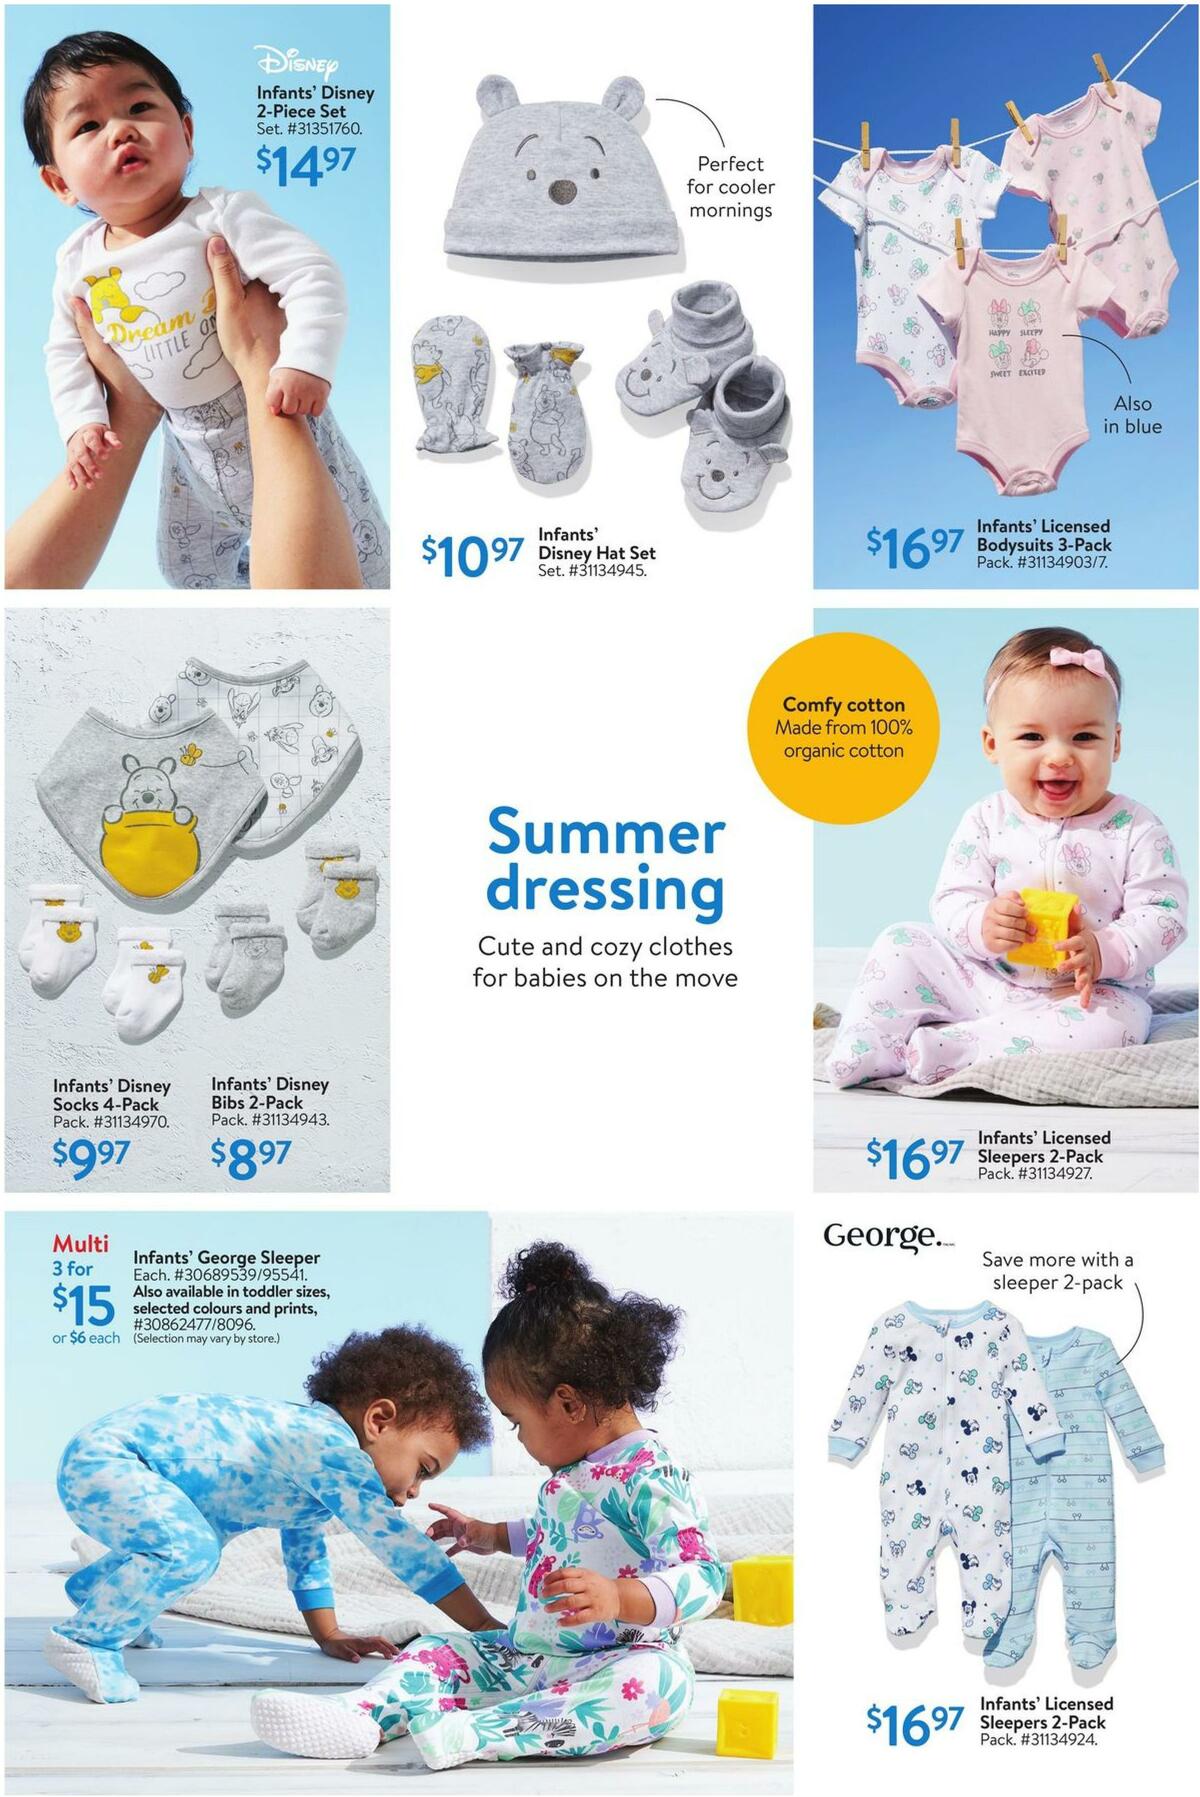 Walmart Baby Flyer from June 16